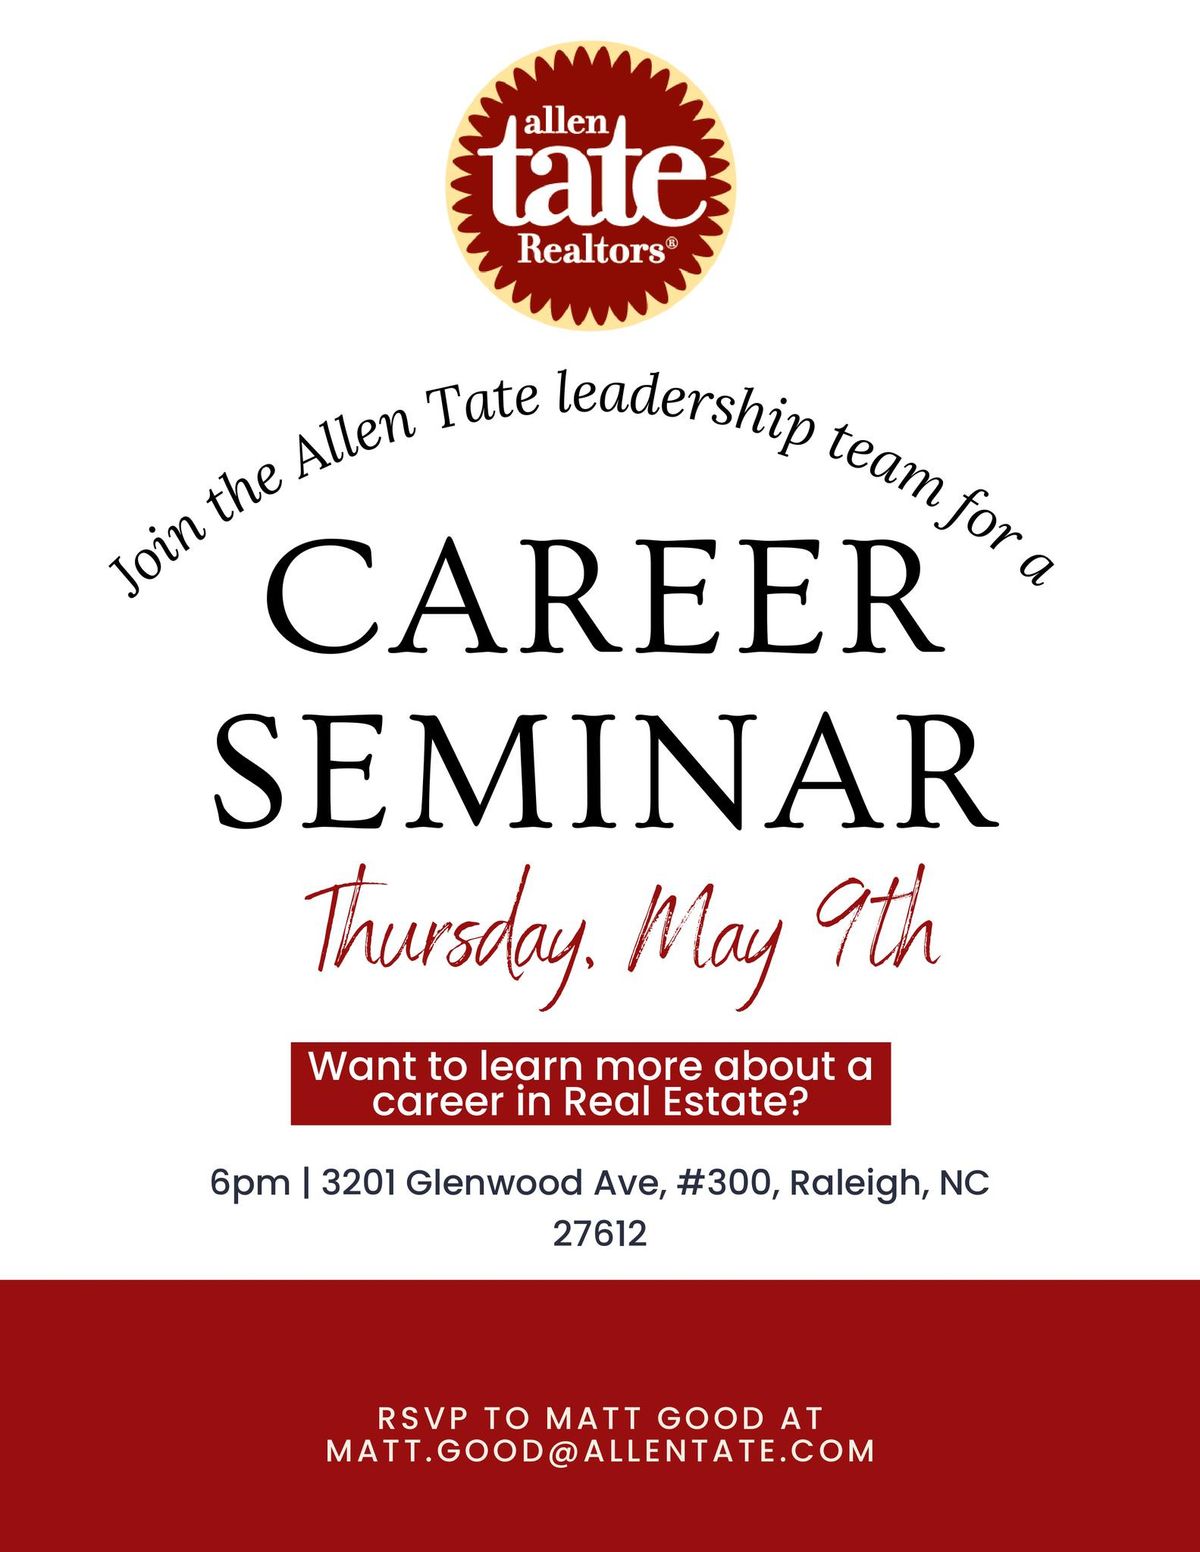 Career Seminar - Allen Tate Realtors